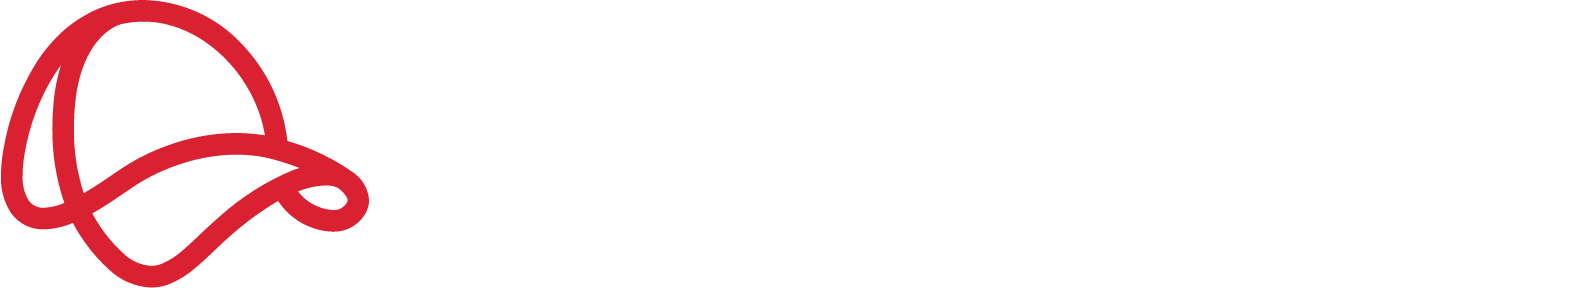 Mr Price Group logo grand pour les fonds sombres (PNG transparent)